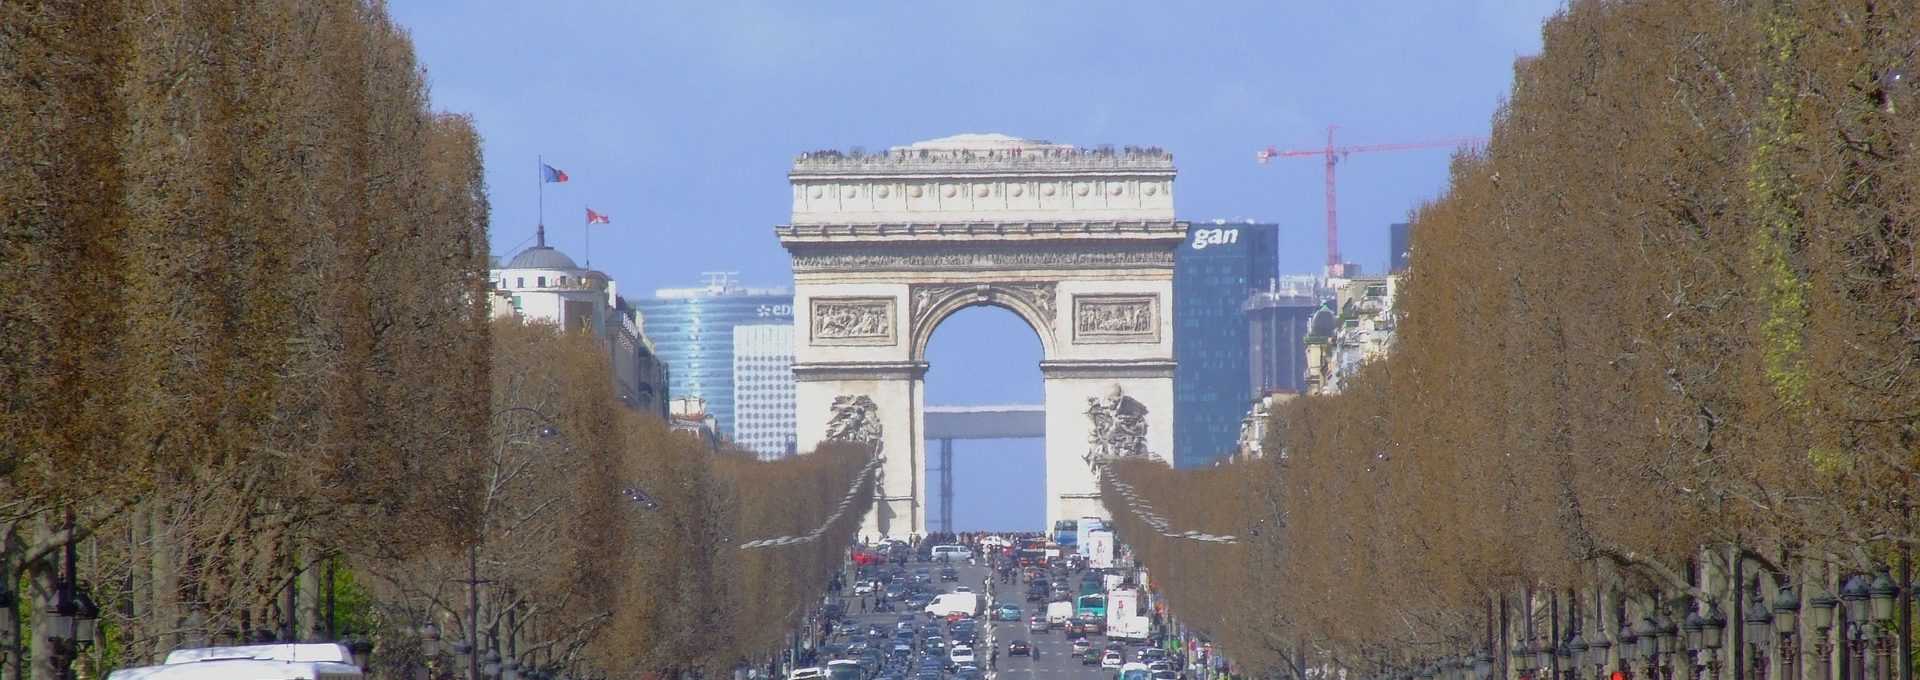 Arco do Triunfo na Avenida Champs-Elysées em Paris